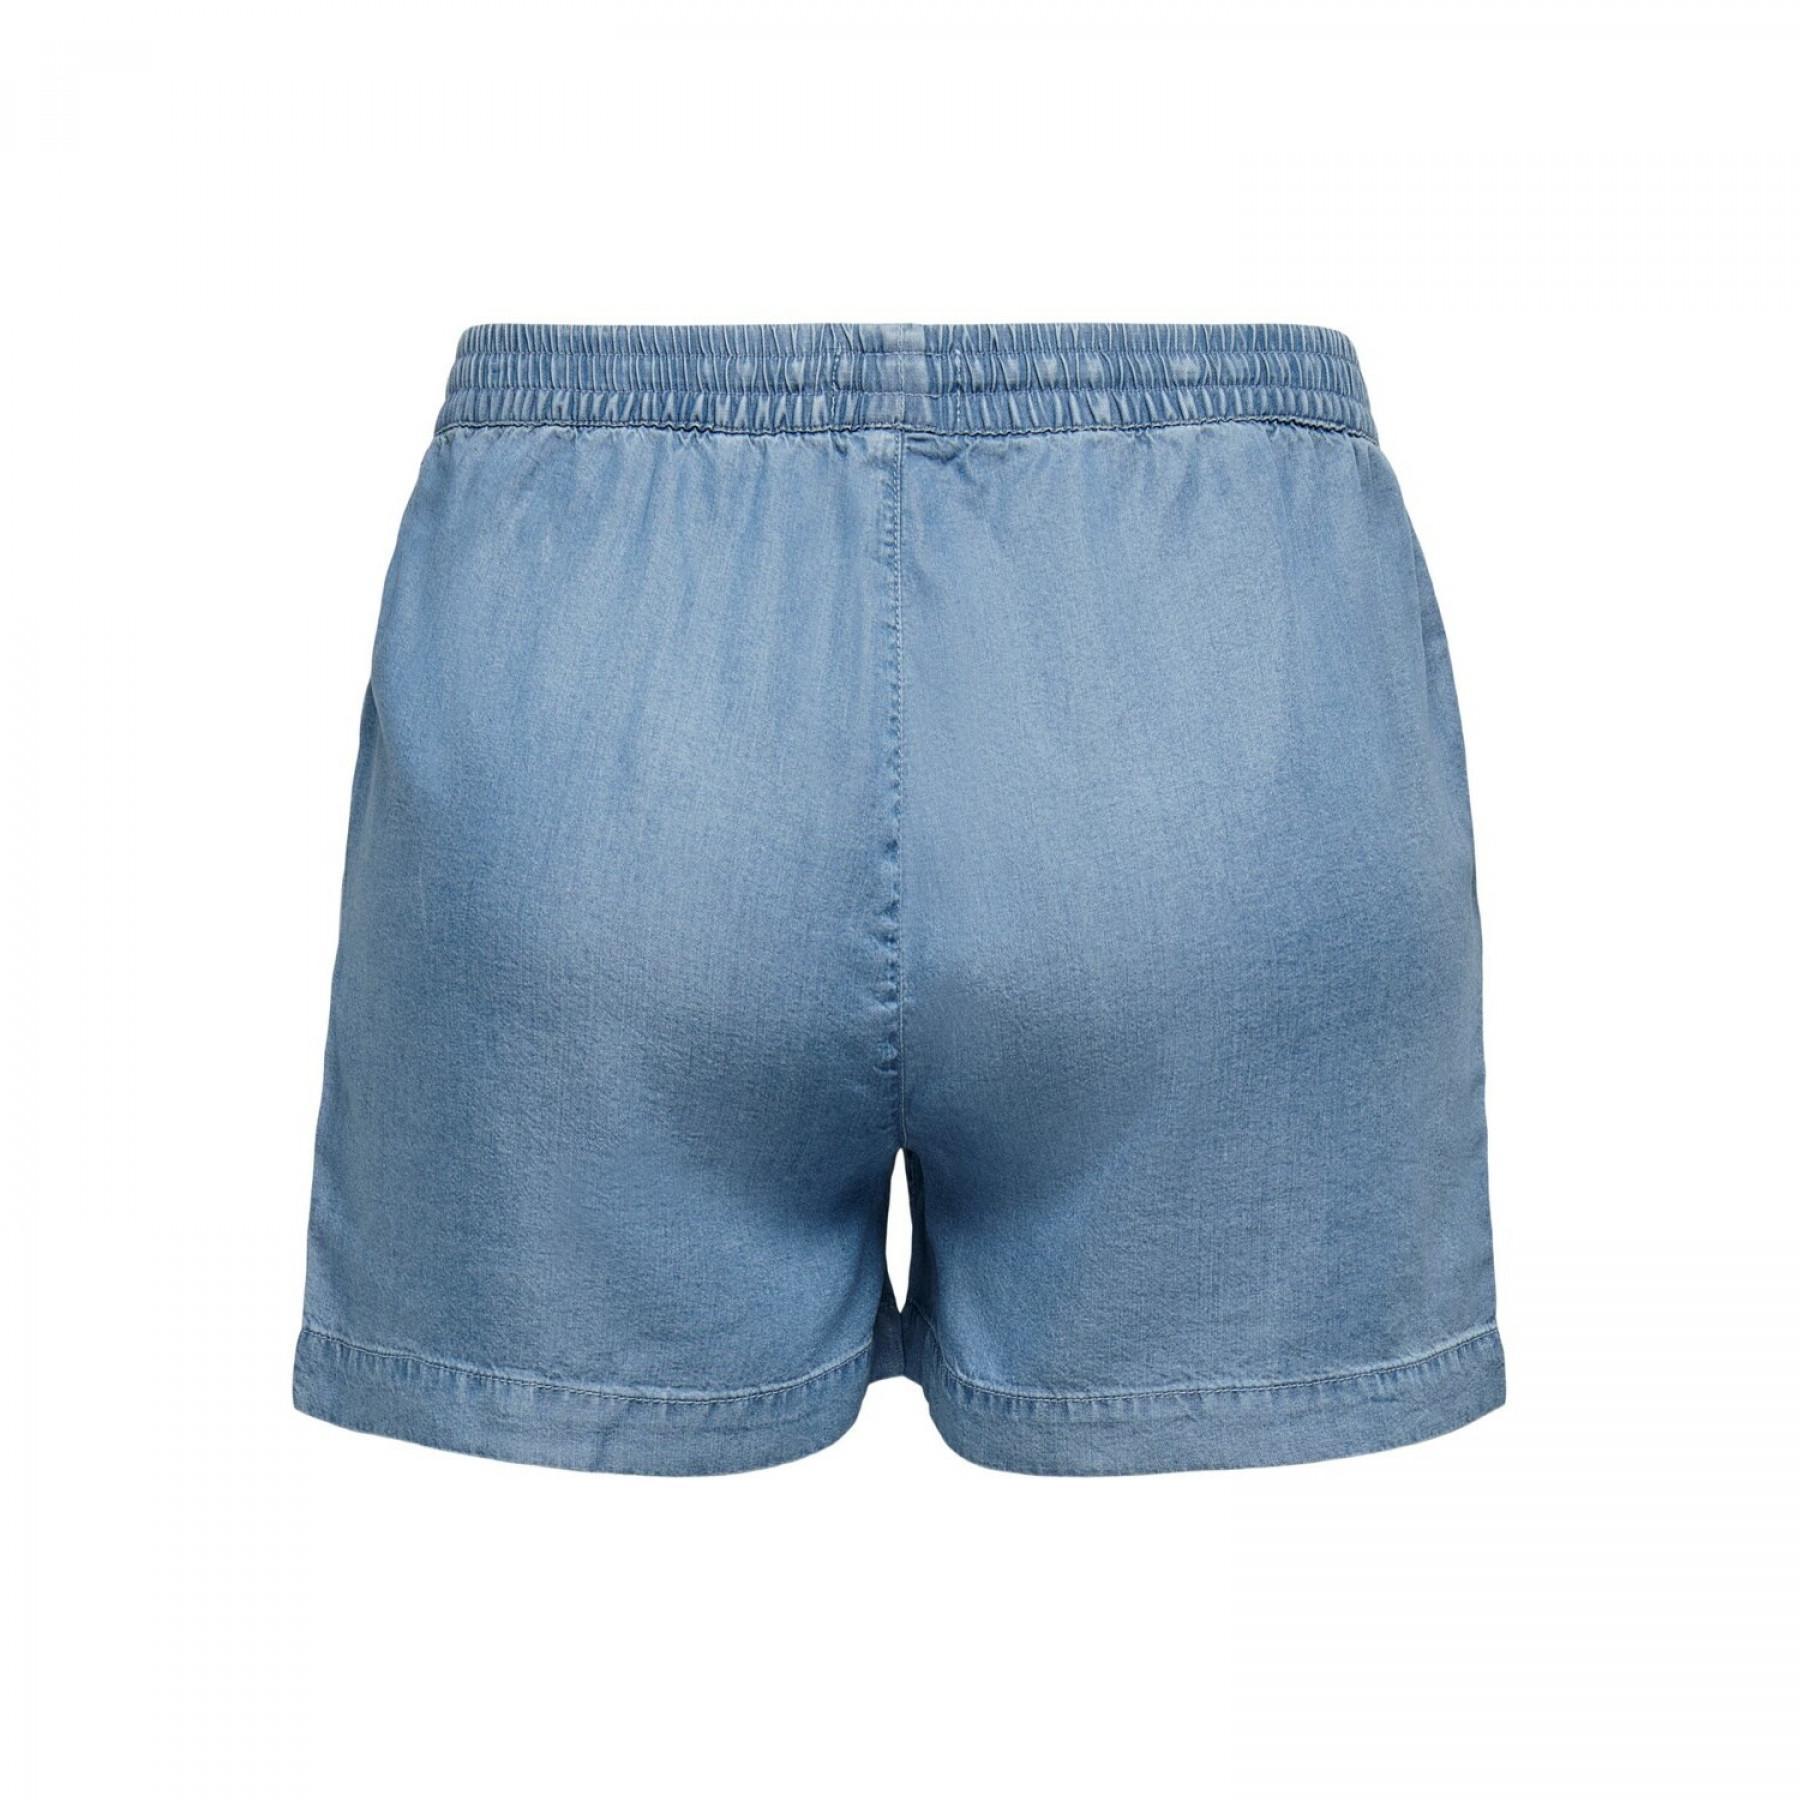 Pantalones cortos de mujer Only onlpema